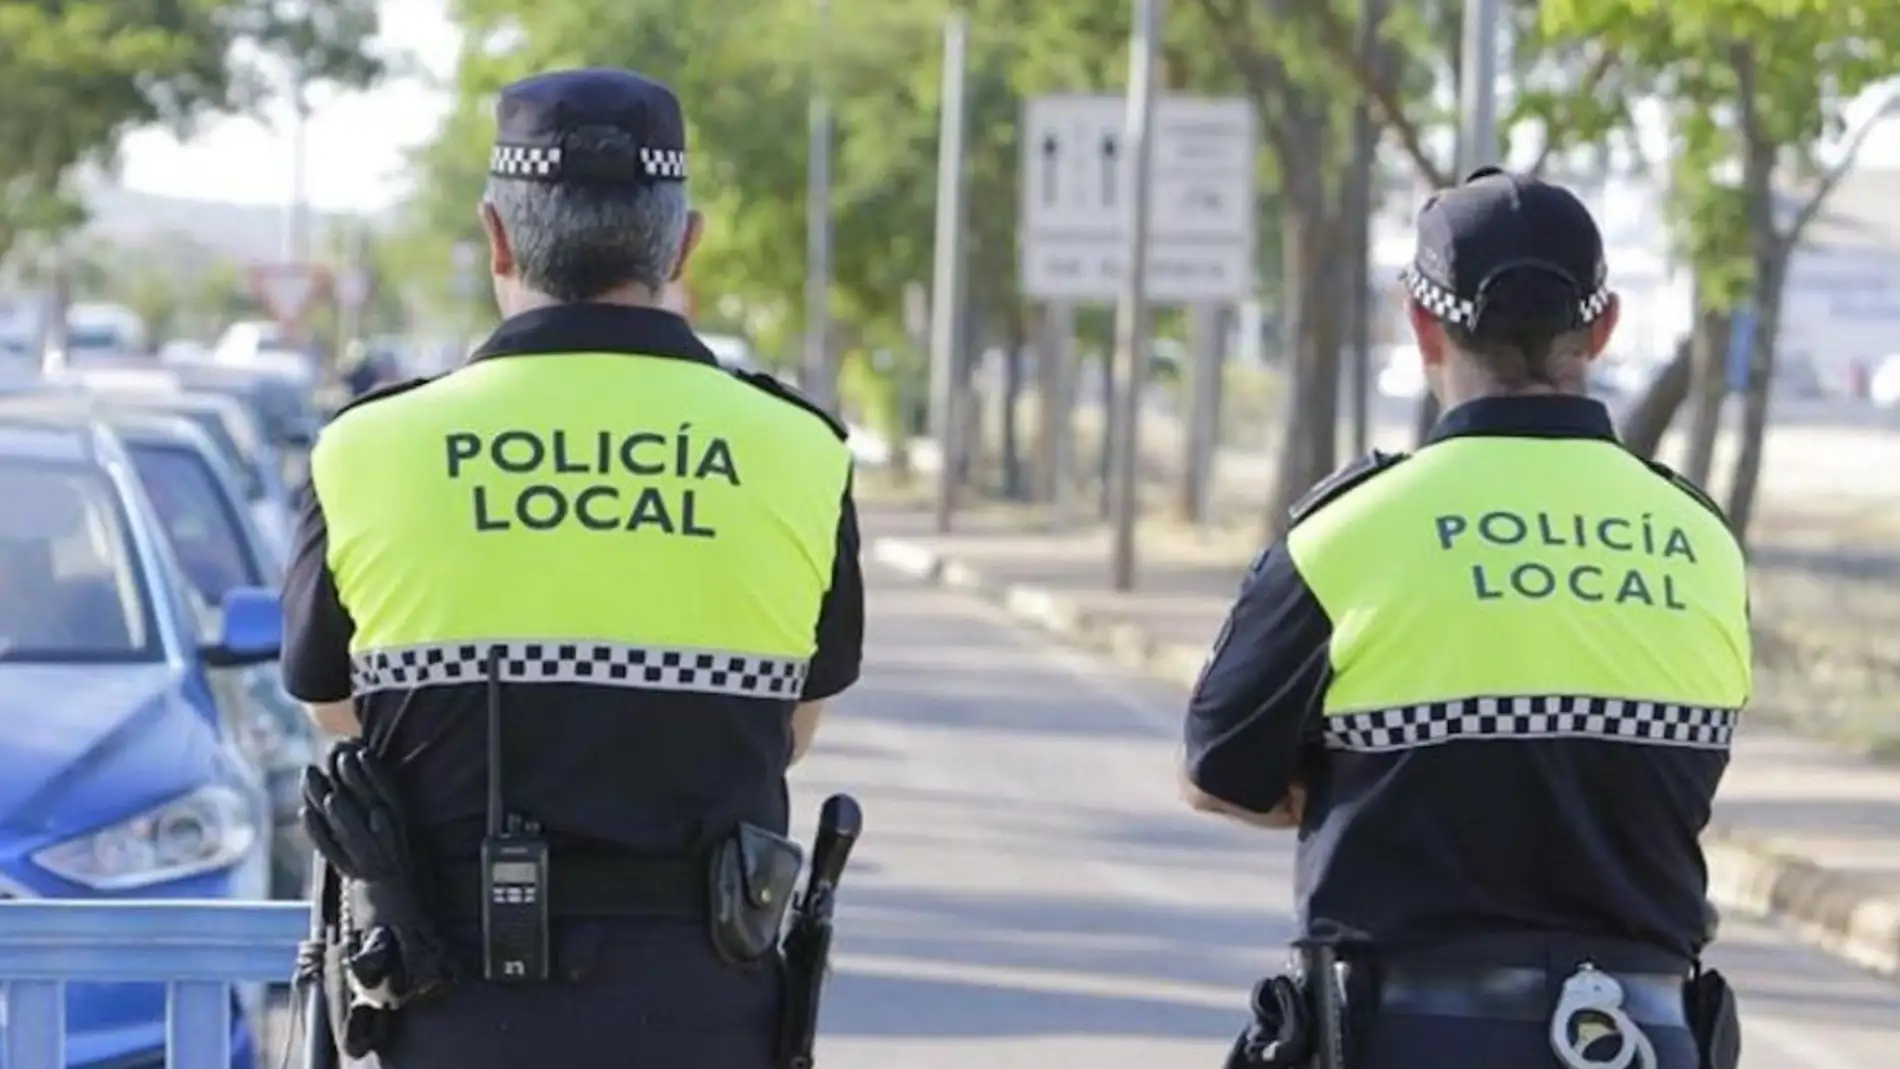 Policía Local Marbella